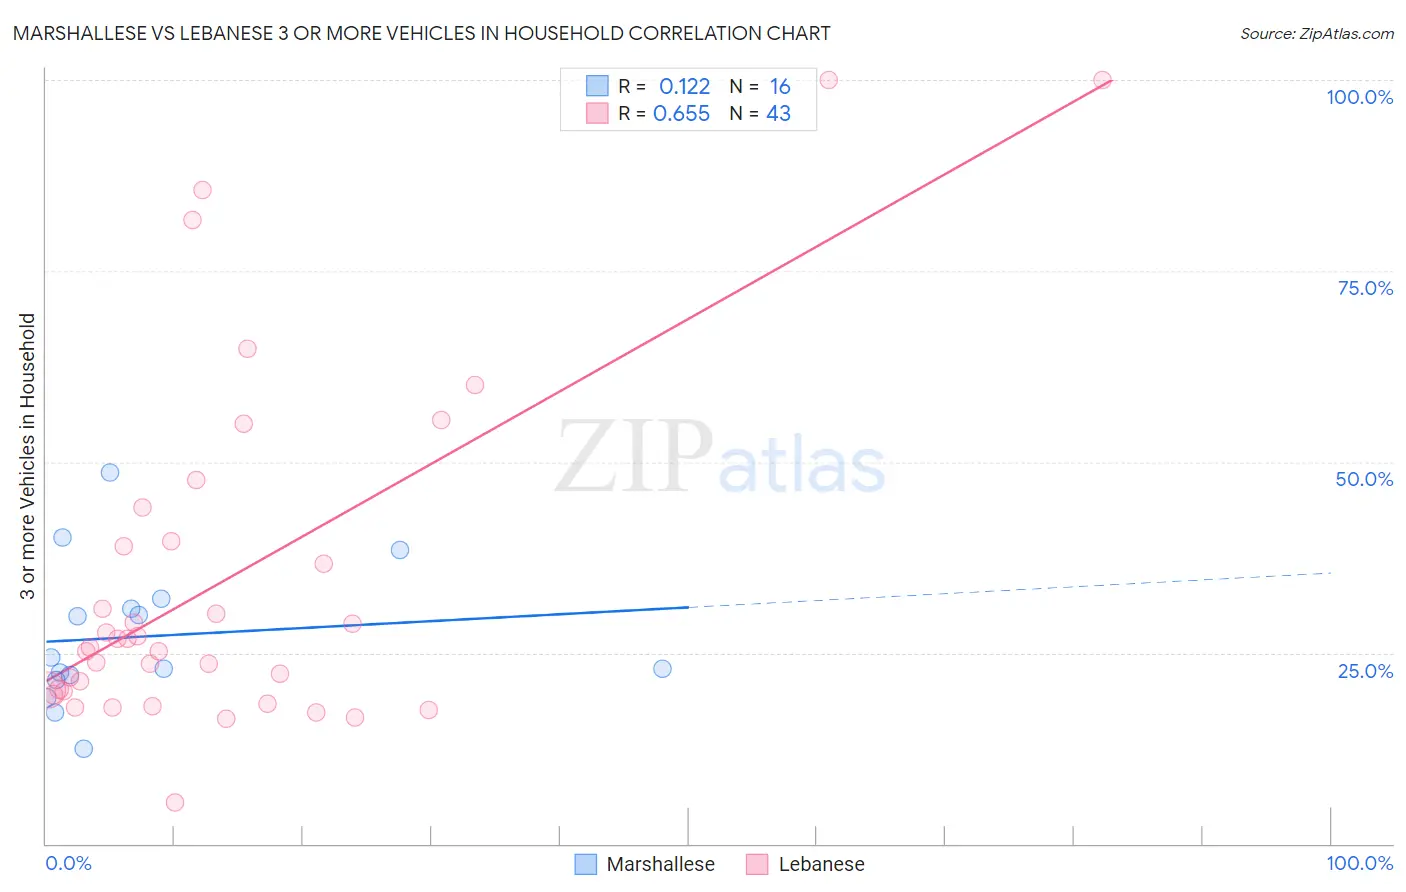 Marshallese vs Lebanese 3 or more Vehicles in Household